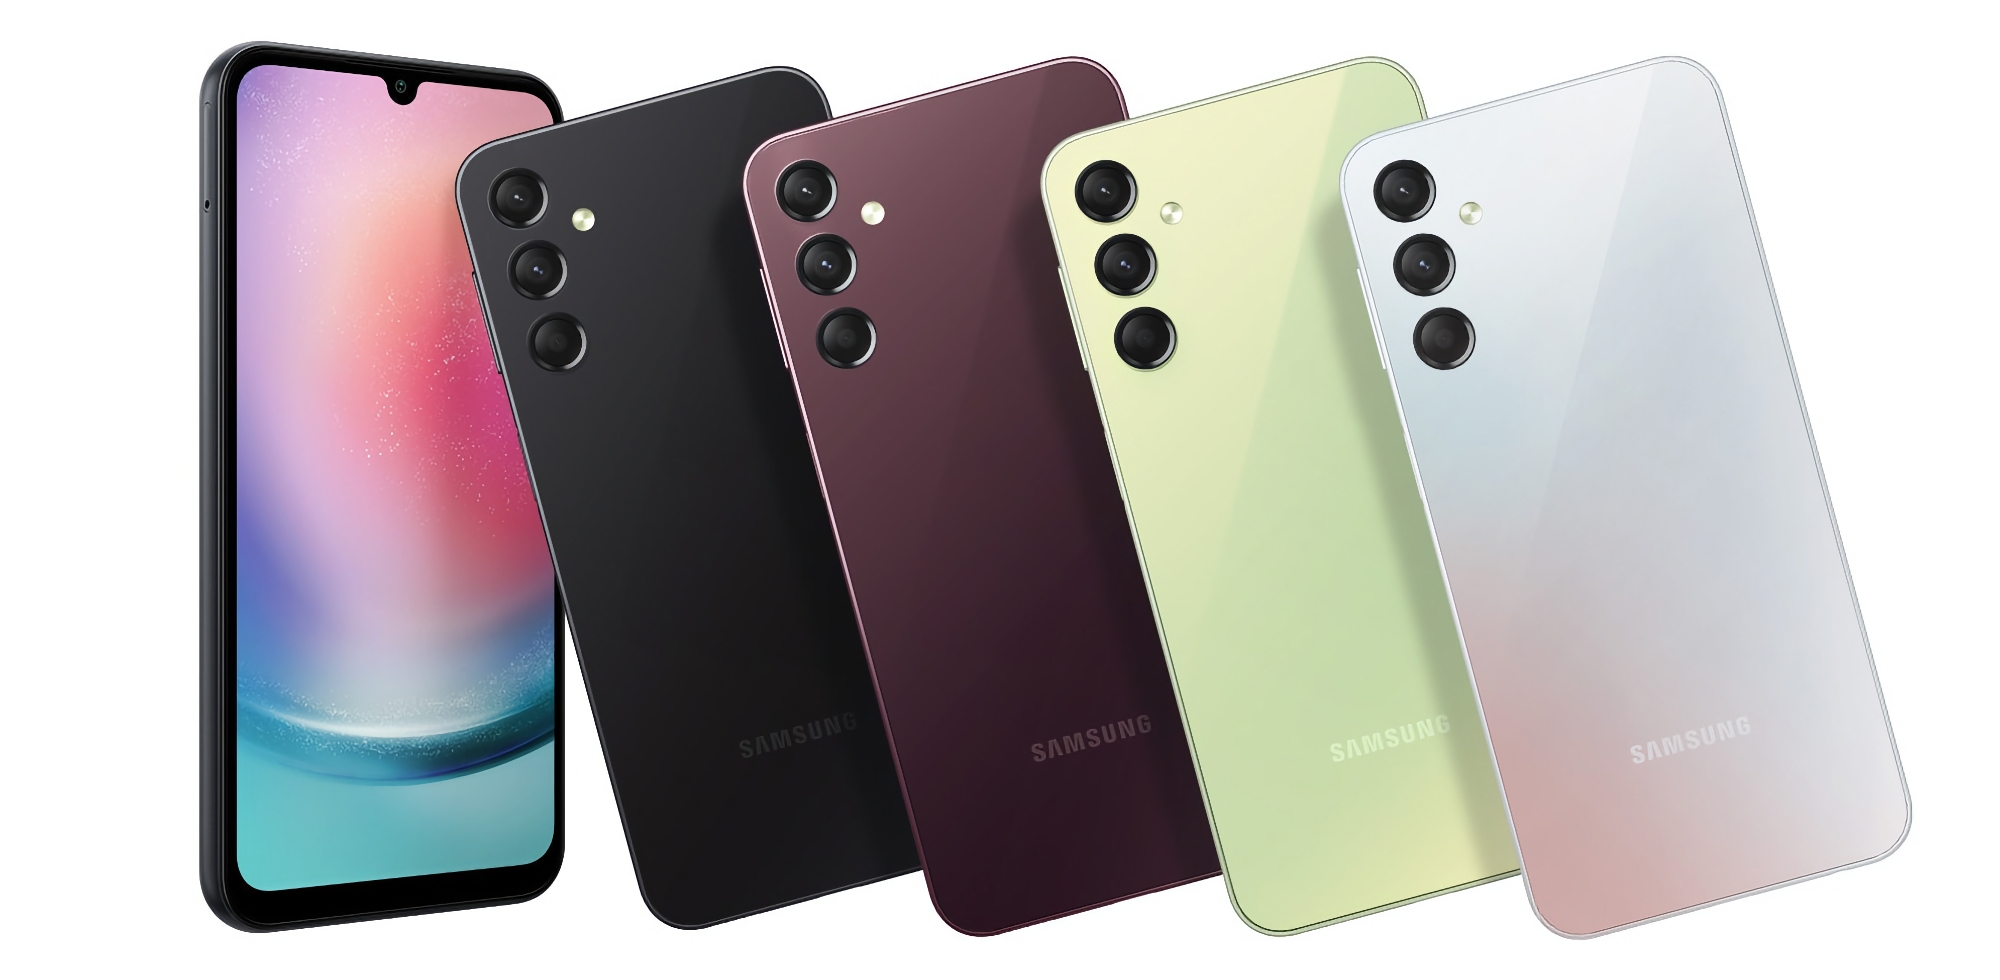 Samsung dévoile le Galaxy A24 : un smartphone économique avec écran AMOLED, puce MediaTek Helio G99, appareil photo 50MP et batterie 5000mAh